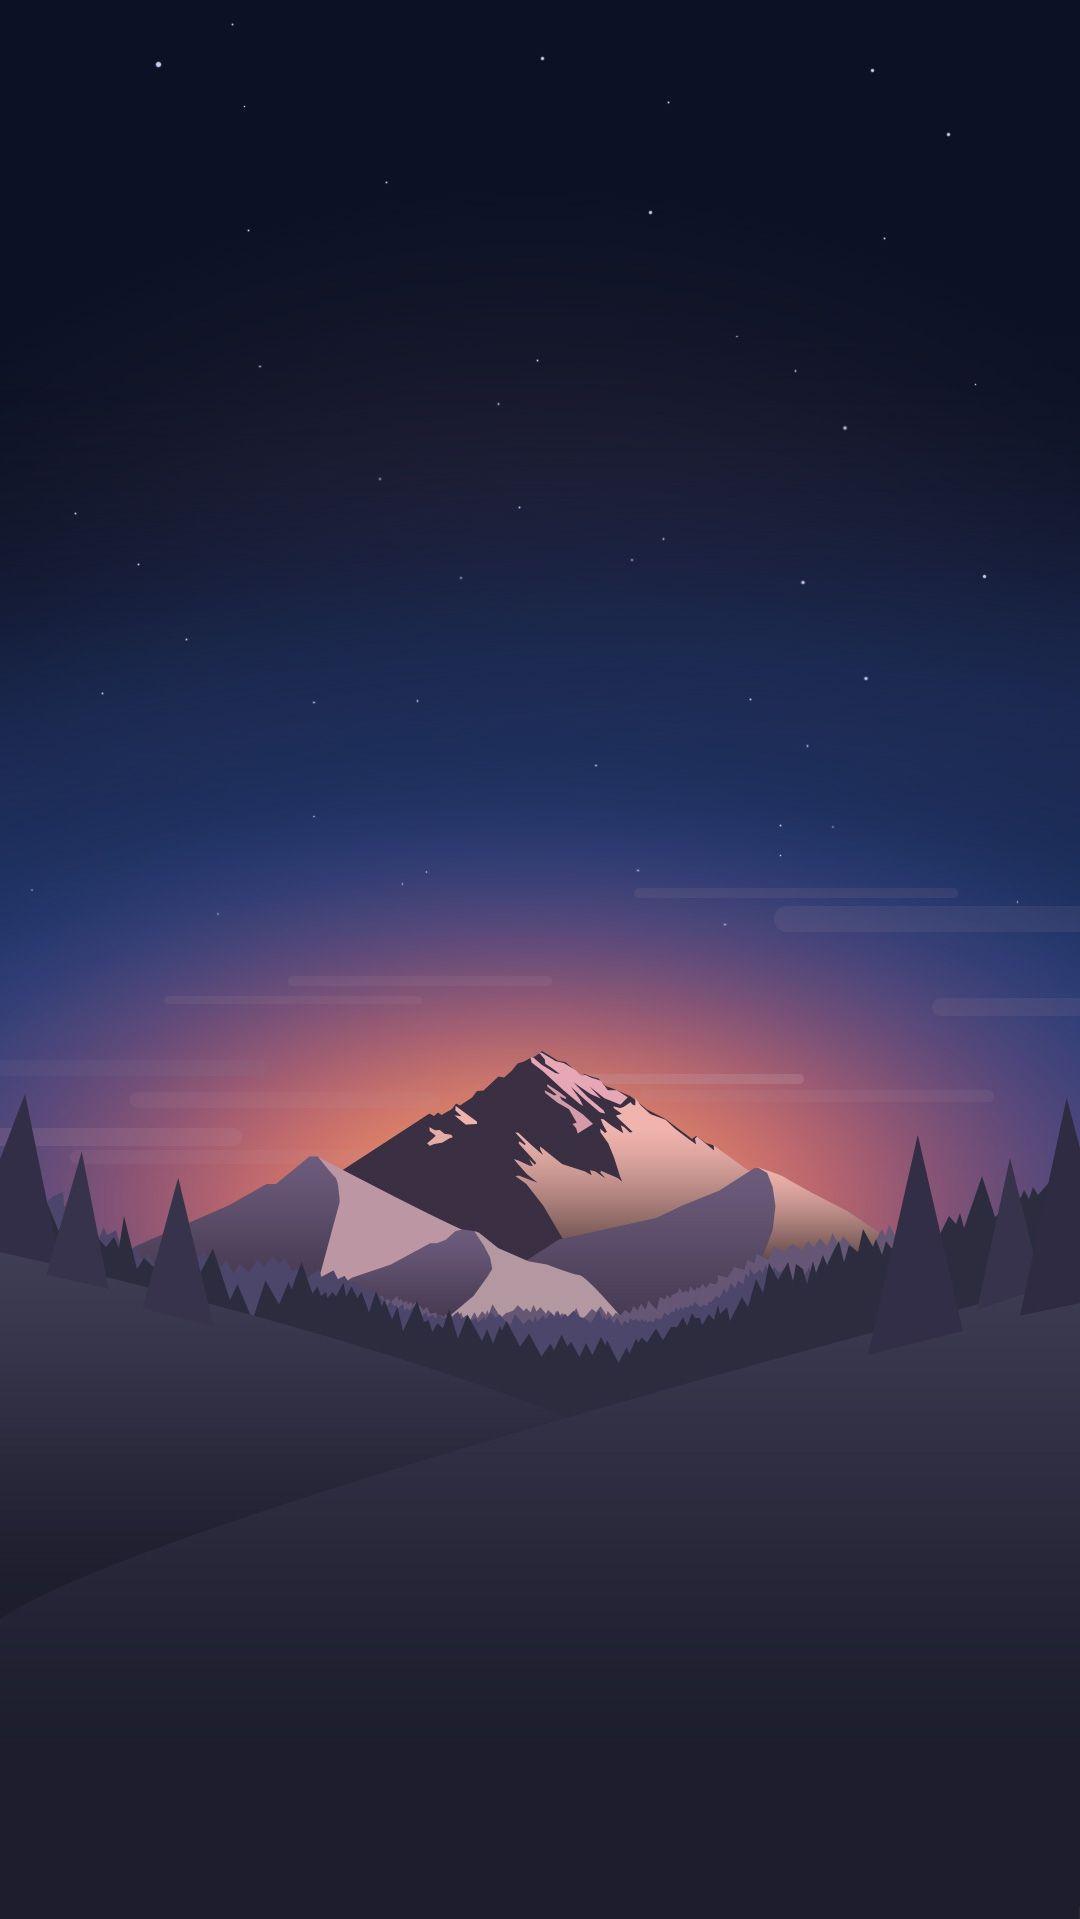 Minimalist Mountain iPhone Wallpapers - Top Free Minimalist Mountain ...